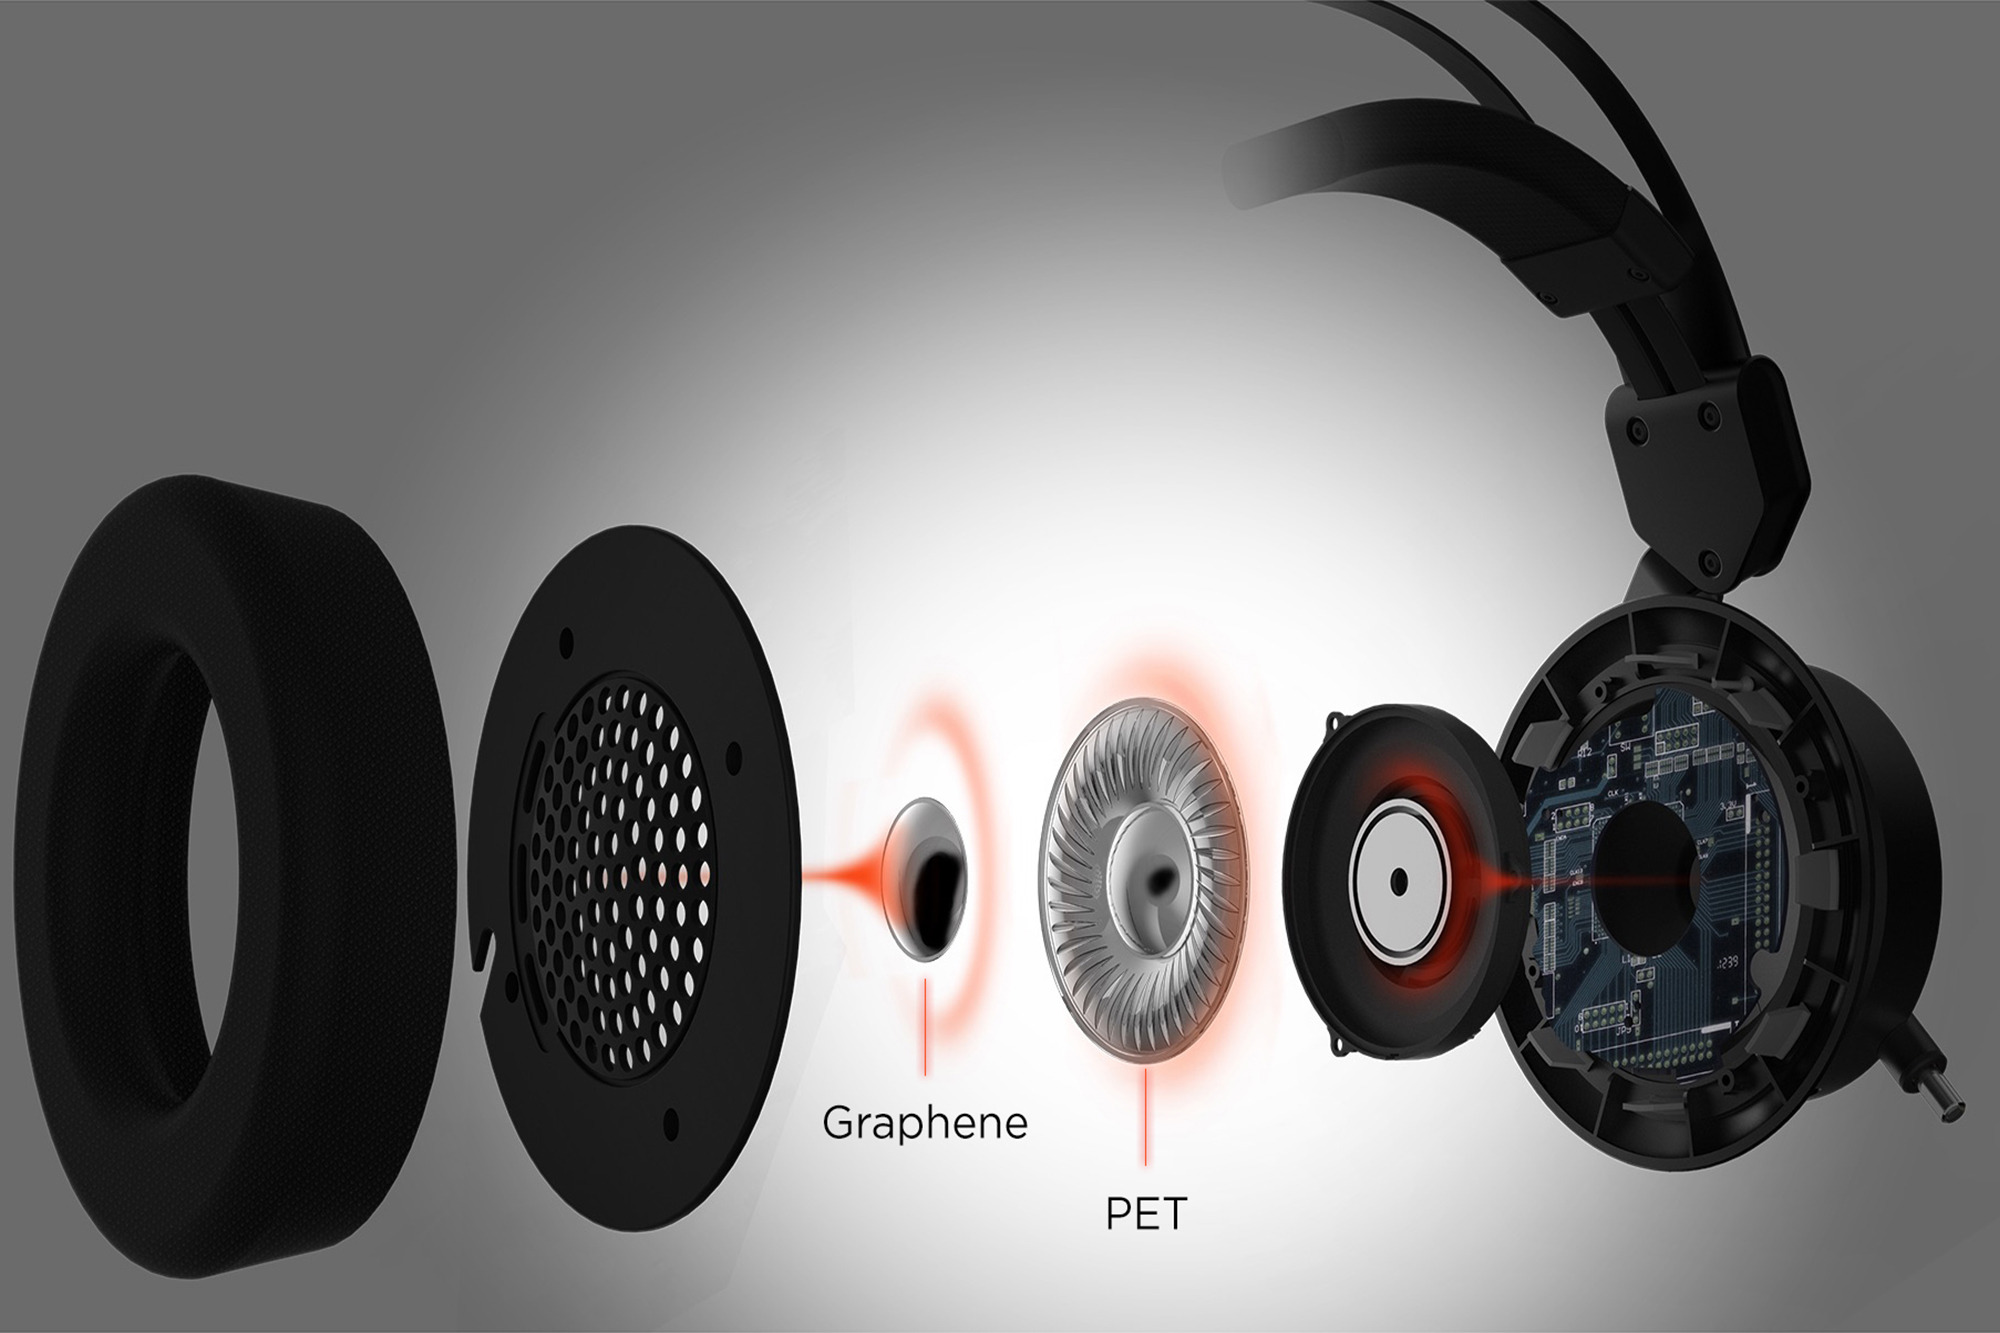 Звук на колонках и наушниках одновременно. 1more VR Headphones. Игровые наушники 1more Spearhead VR Gaming Headphones. 1more Spearhead h1005. Наушники с графеновой мембраной.